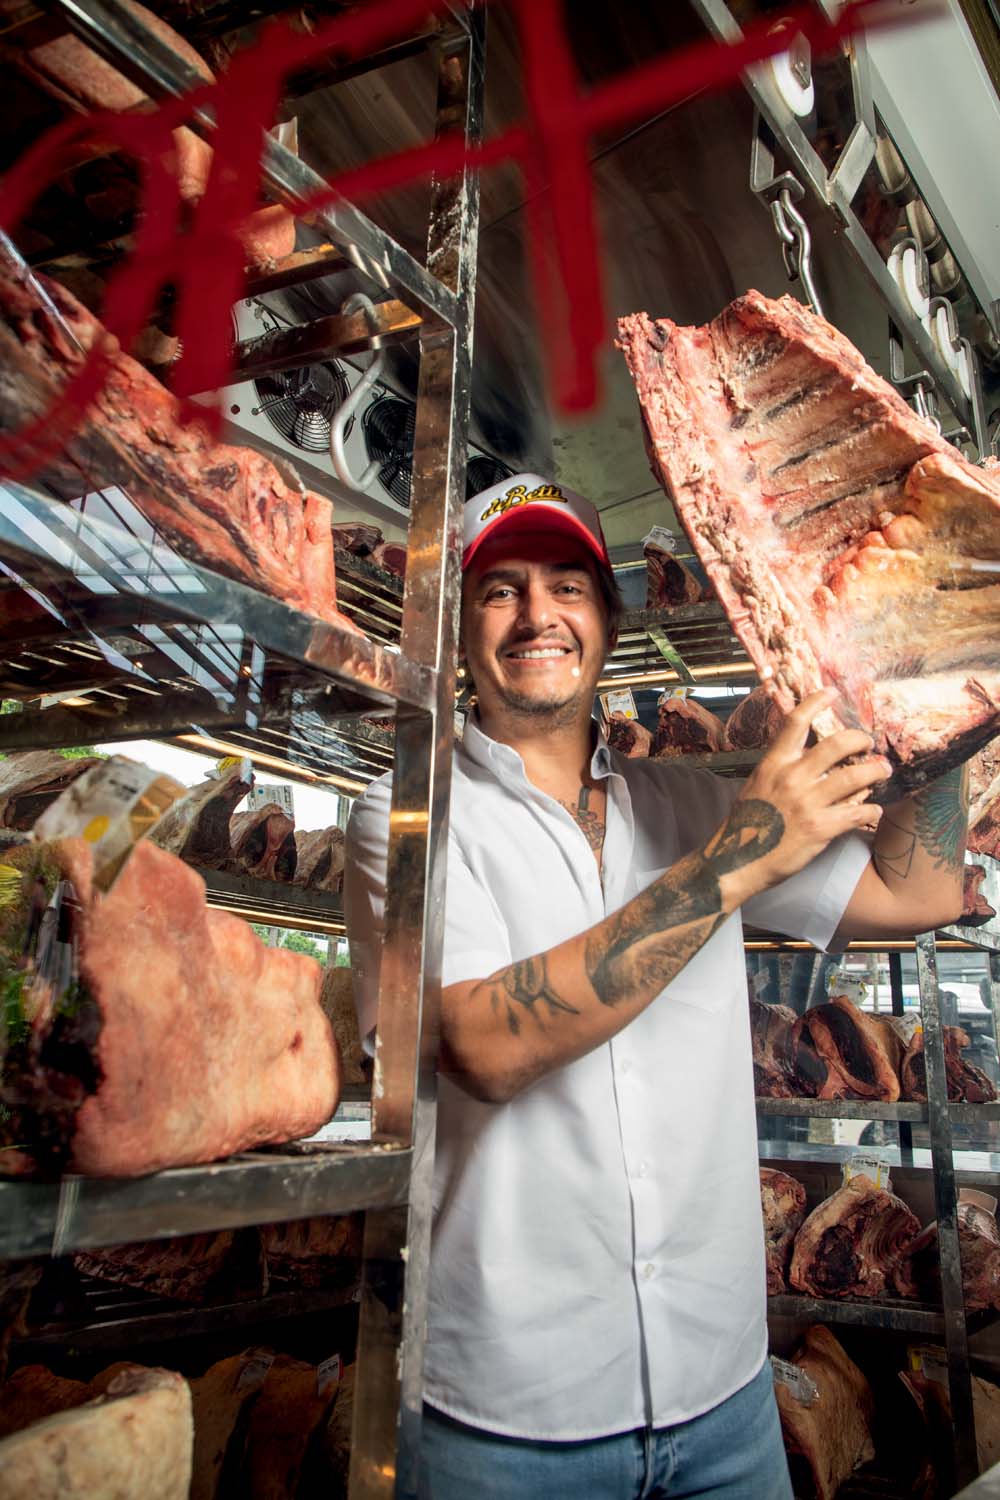 Um homem com avental branco e boné vermelho sorri para a foto e segura um pedaço grande de carne. A sua volta tem prateleiras com mais pedaços de carnes.